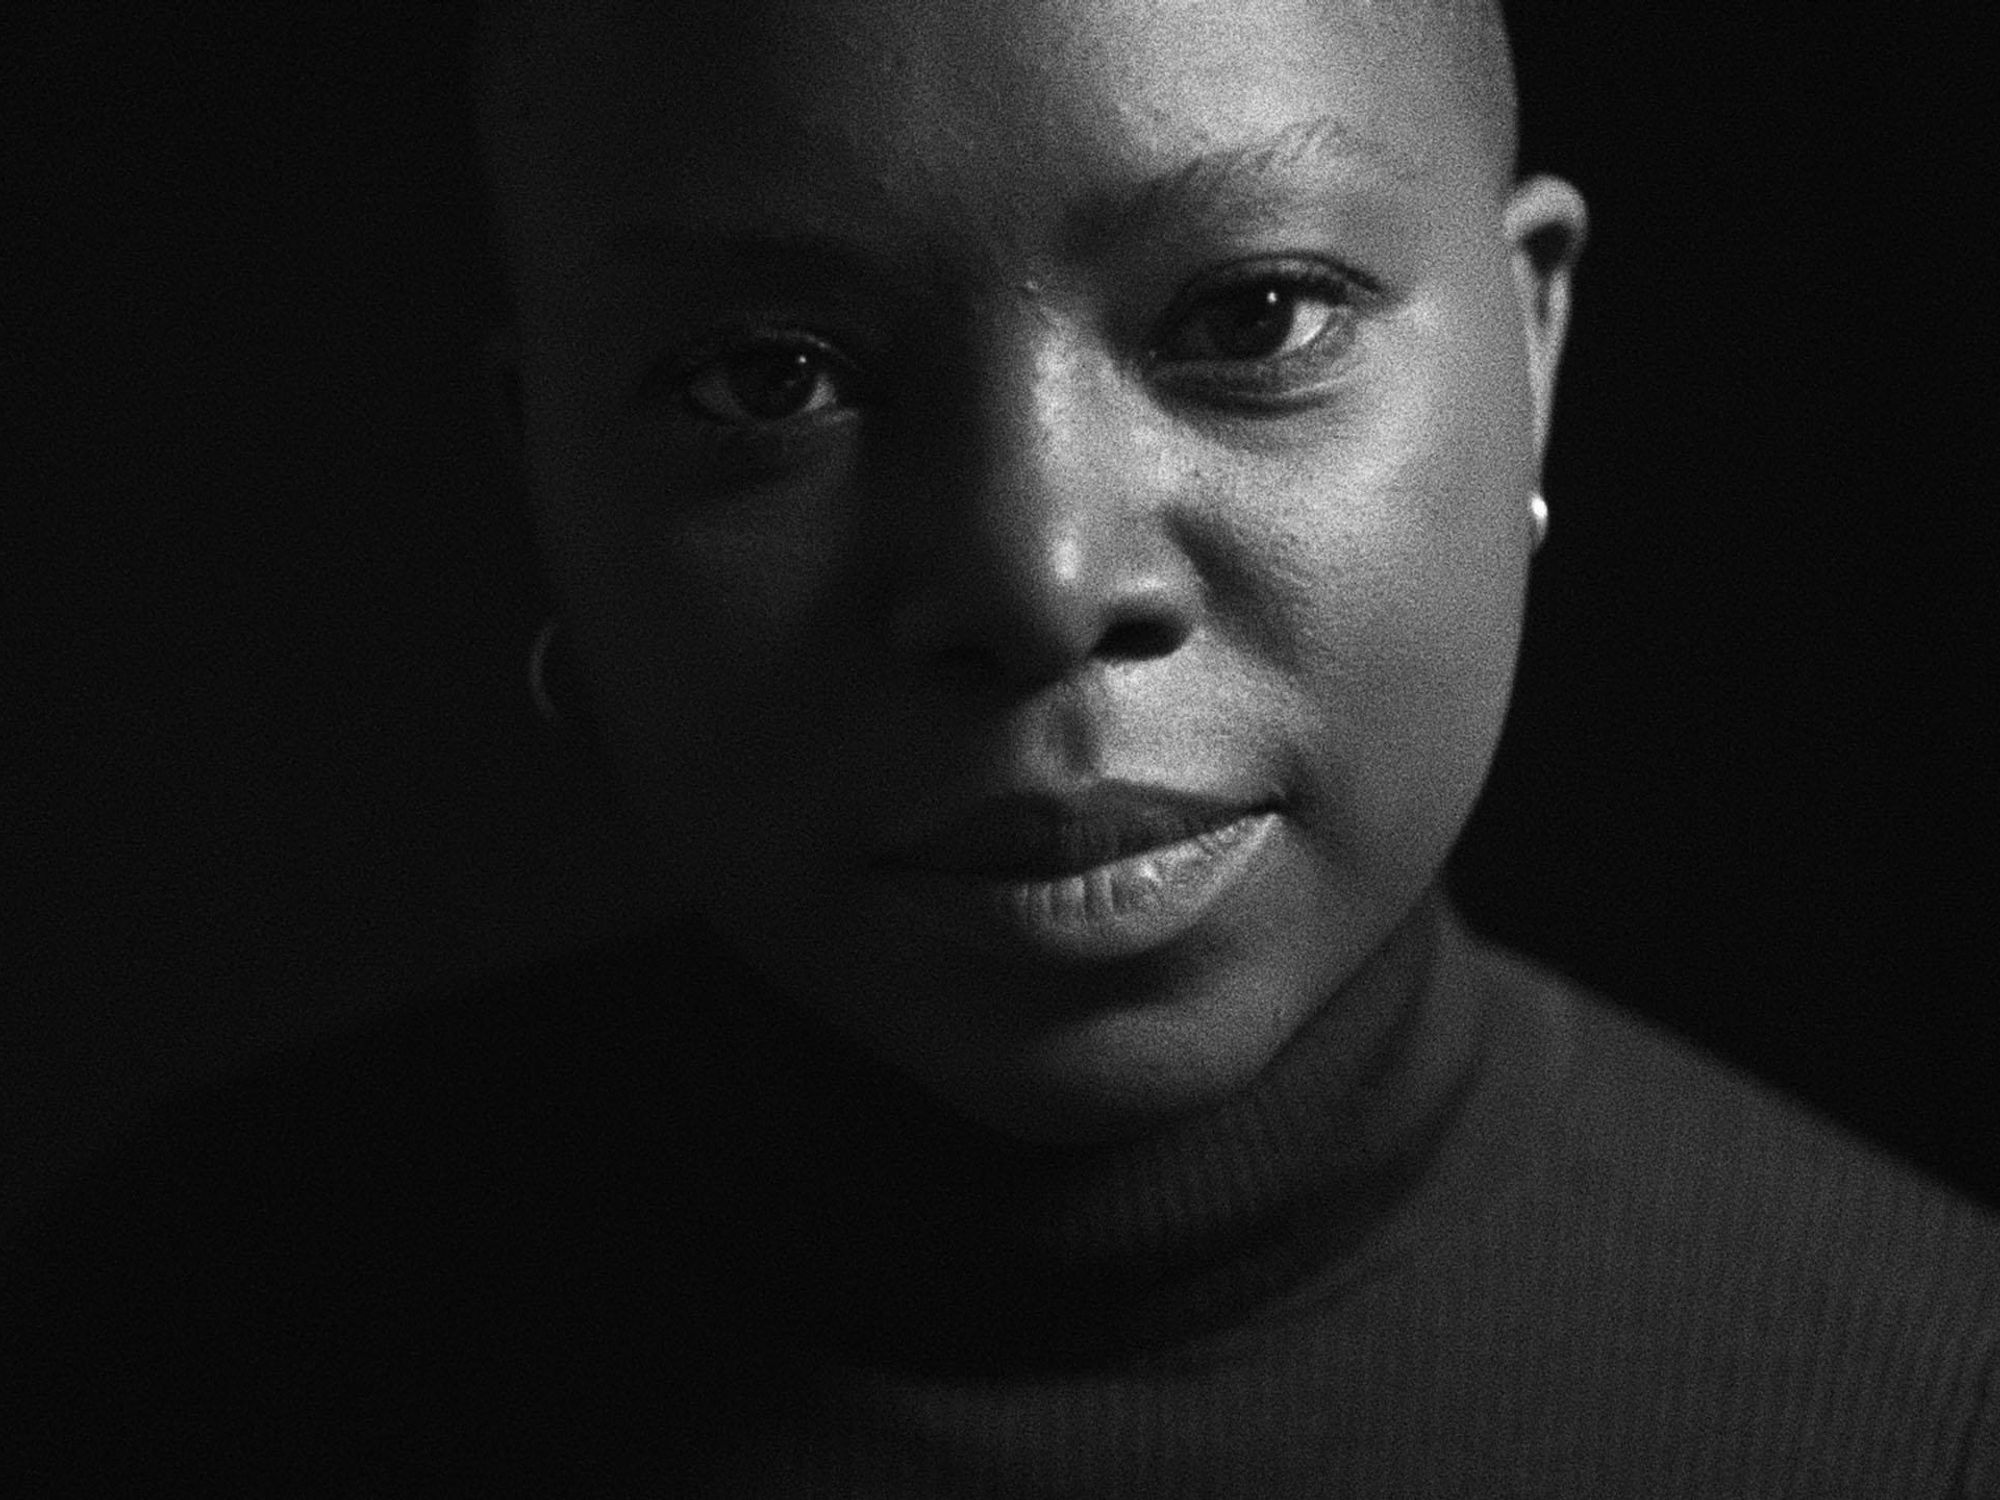 A black and white image of the filmmaker Milisuthando Bongela.